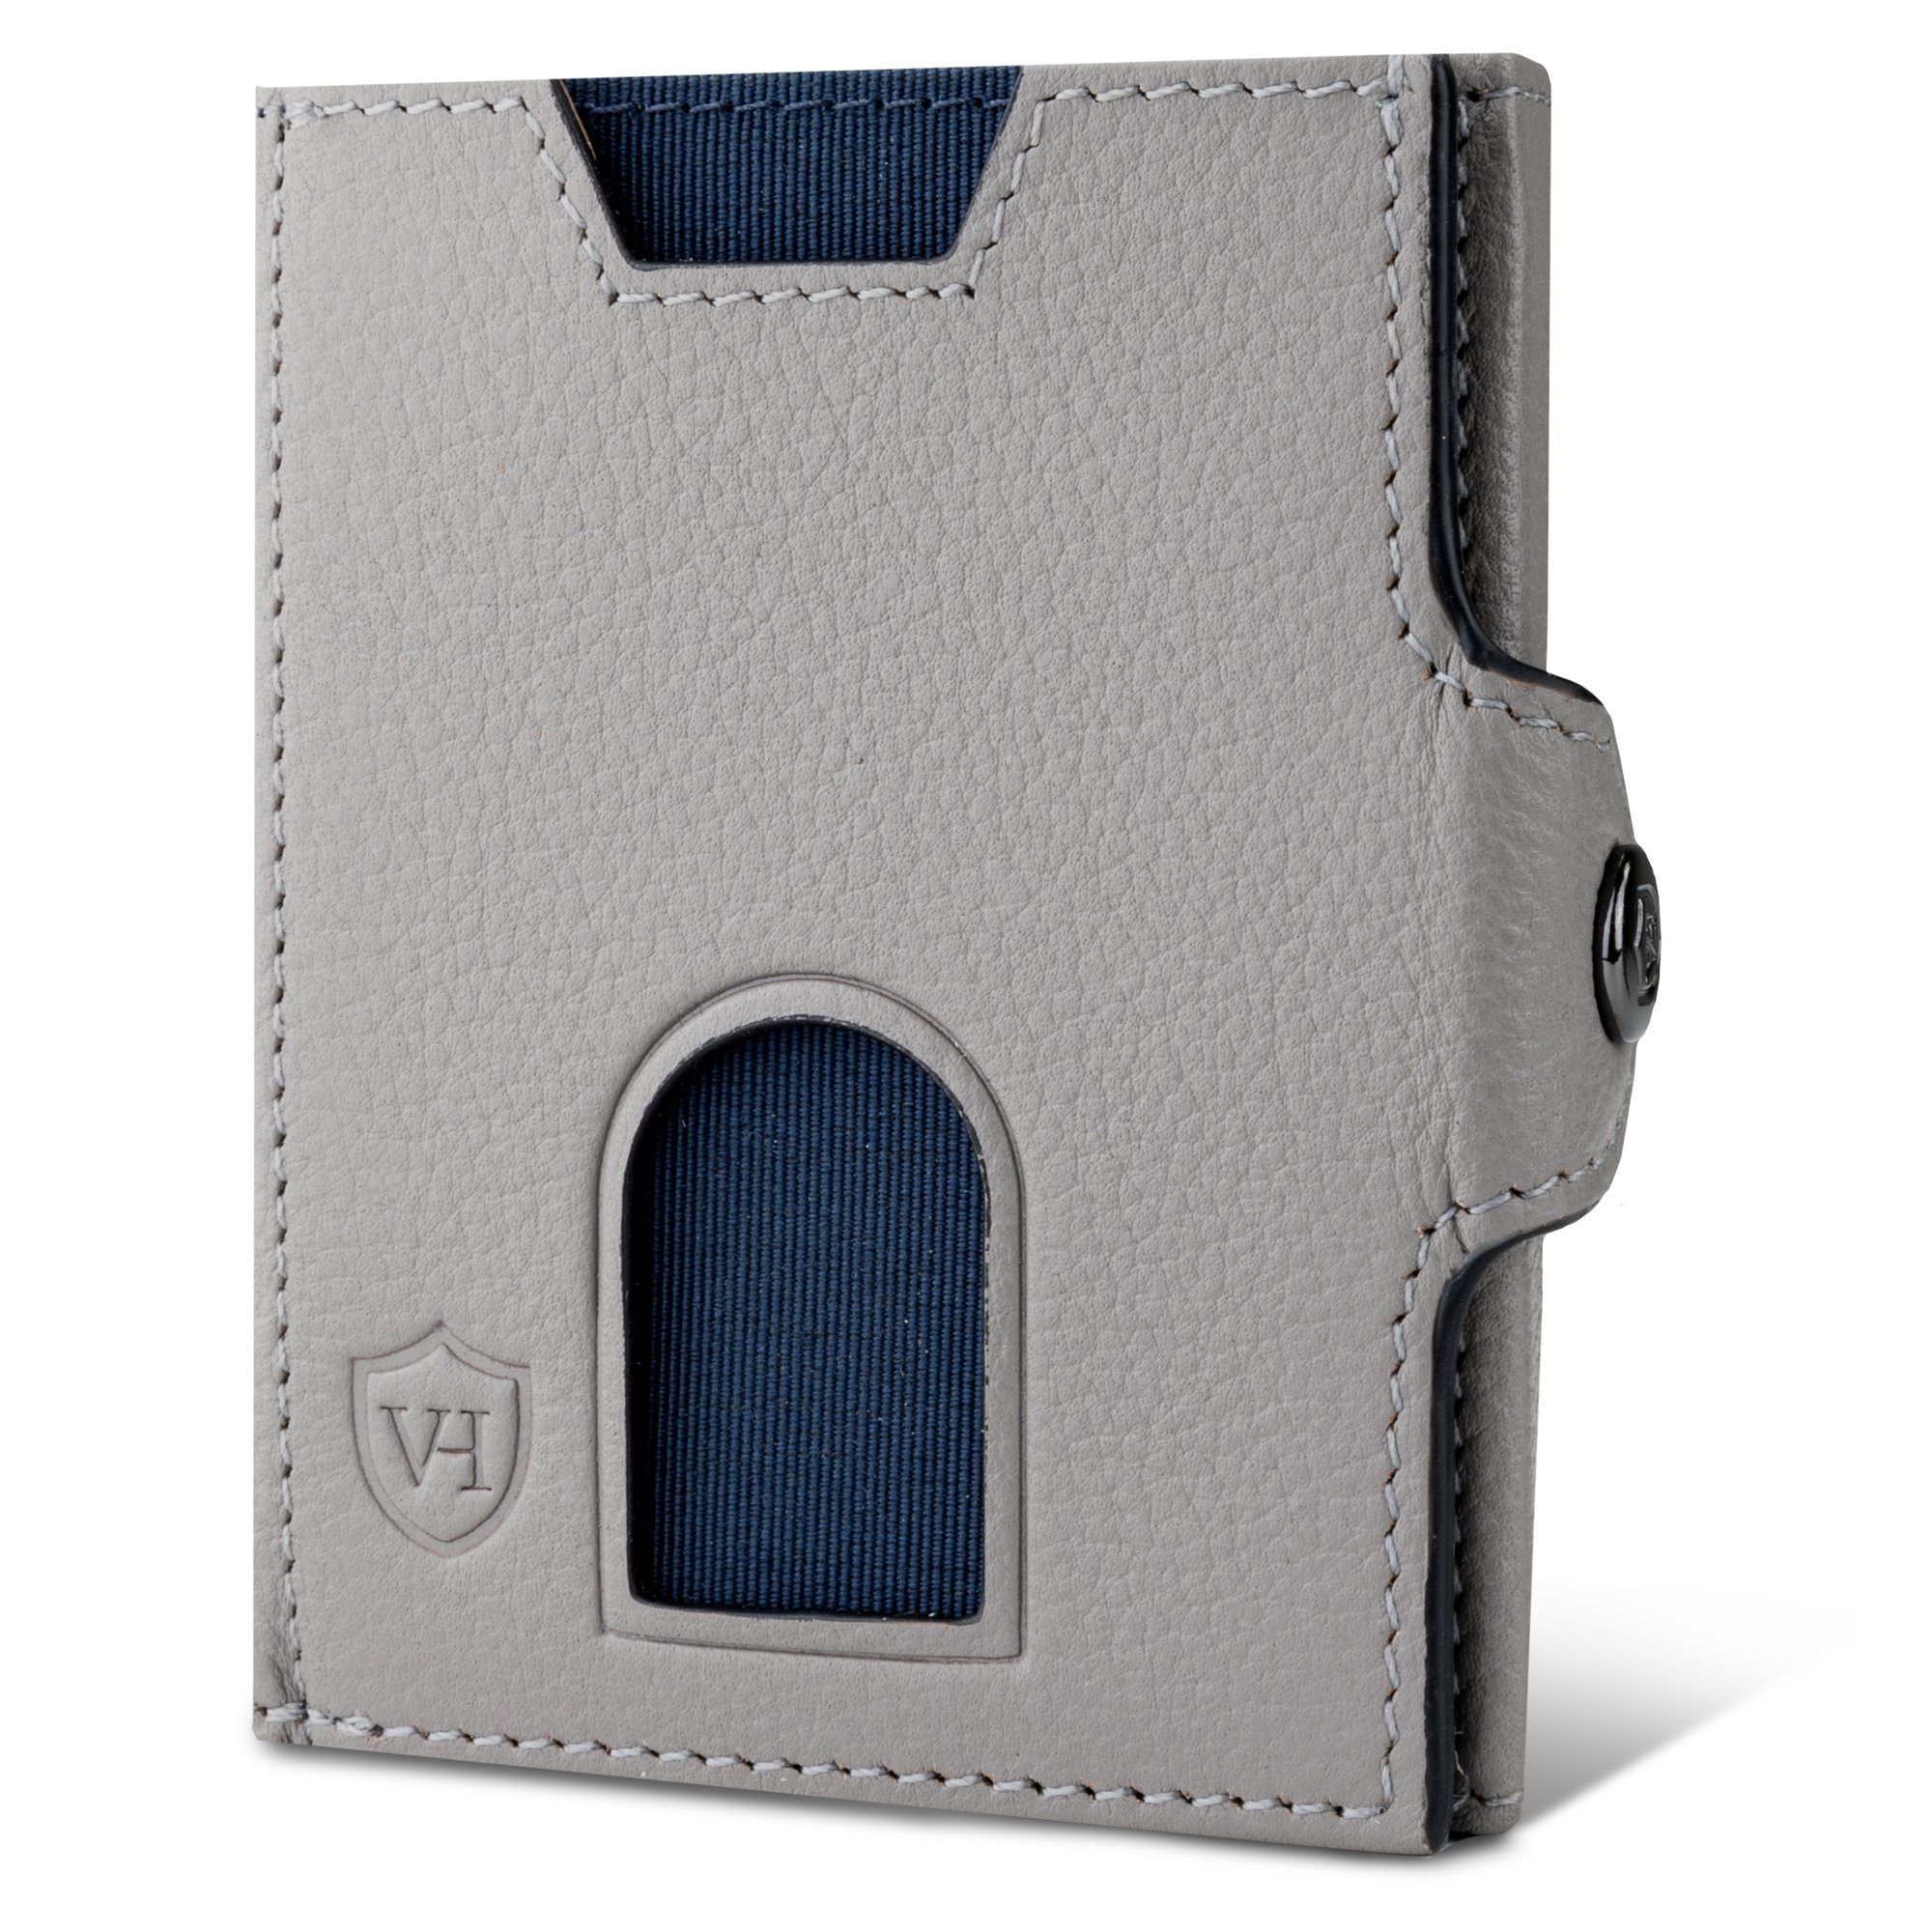 VON HEESEN Geldbörse Whizz Wallet mit 6 Kartenfächer, Slim Wallet Geldbeutel Portemonnaie inkl. RFID-Schutz & Geschenkbox Grau